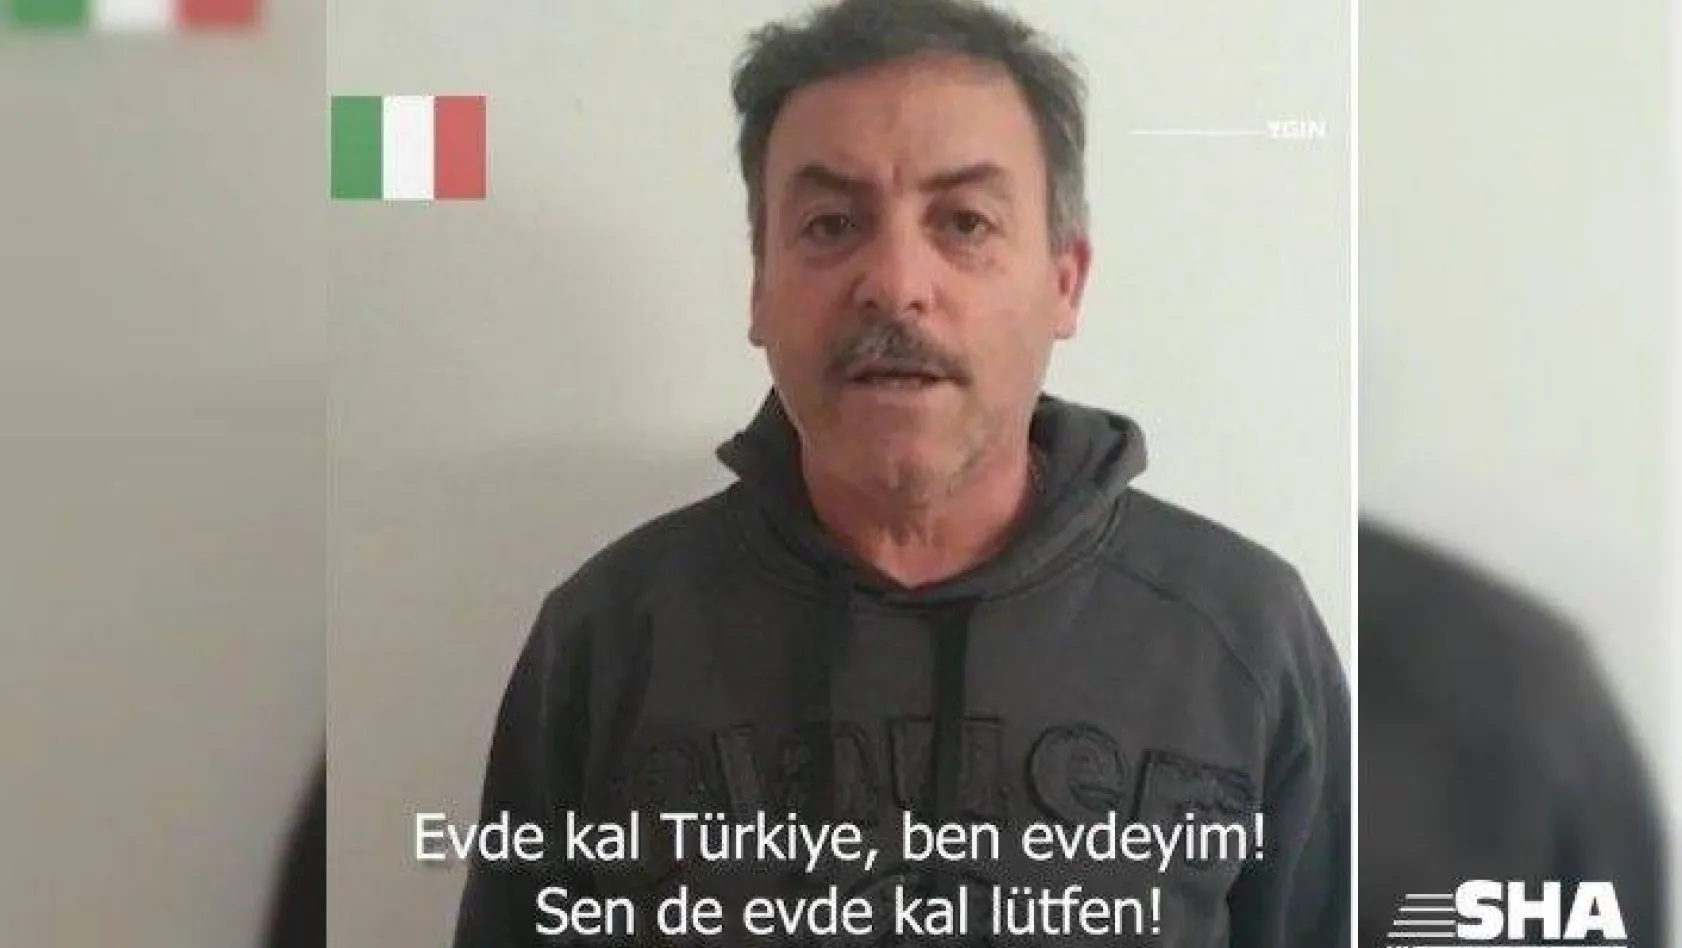 İtalyanlar ve İspanyollar Türkiye'ye 'Evde Kal' diyerek destek verdi